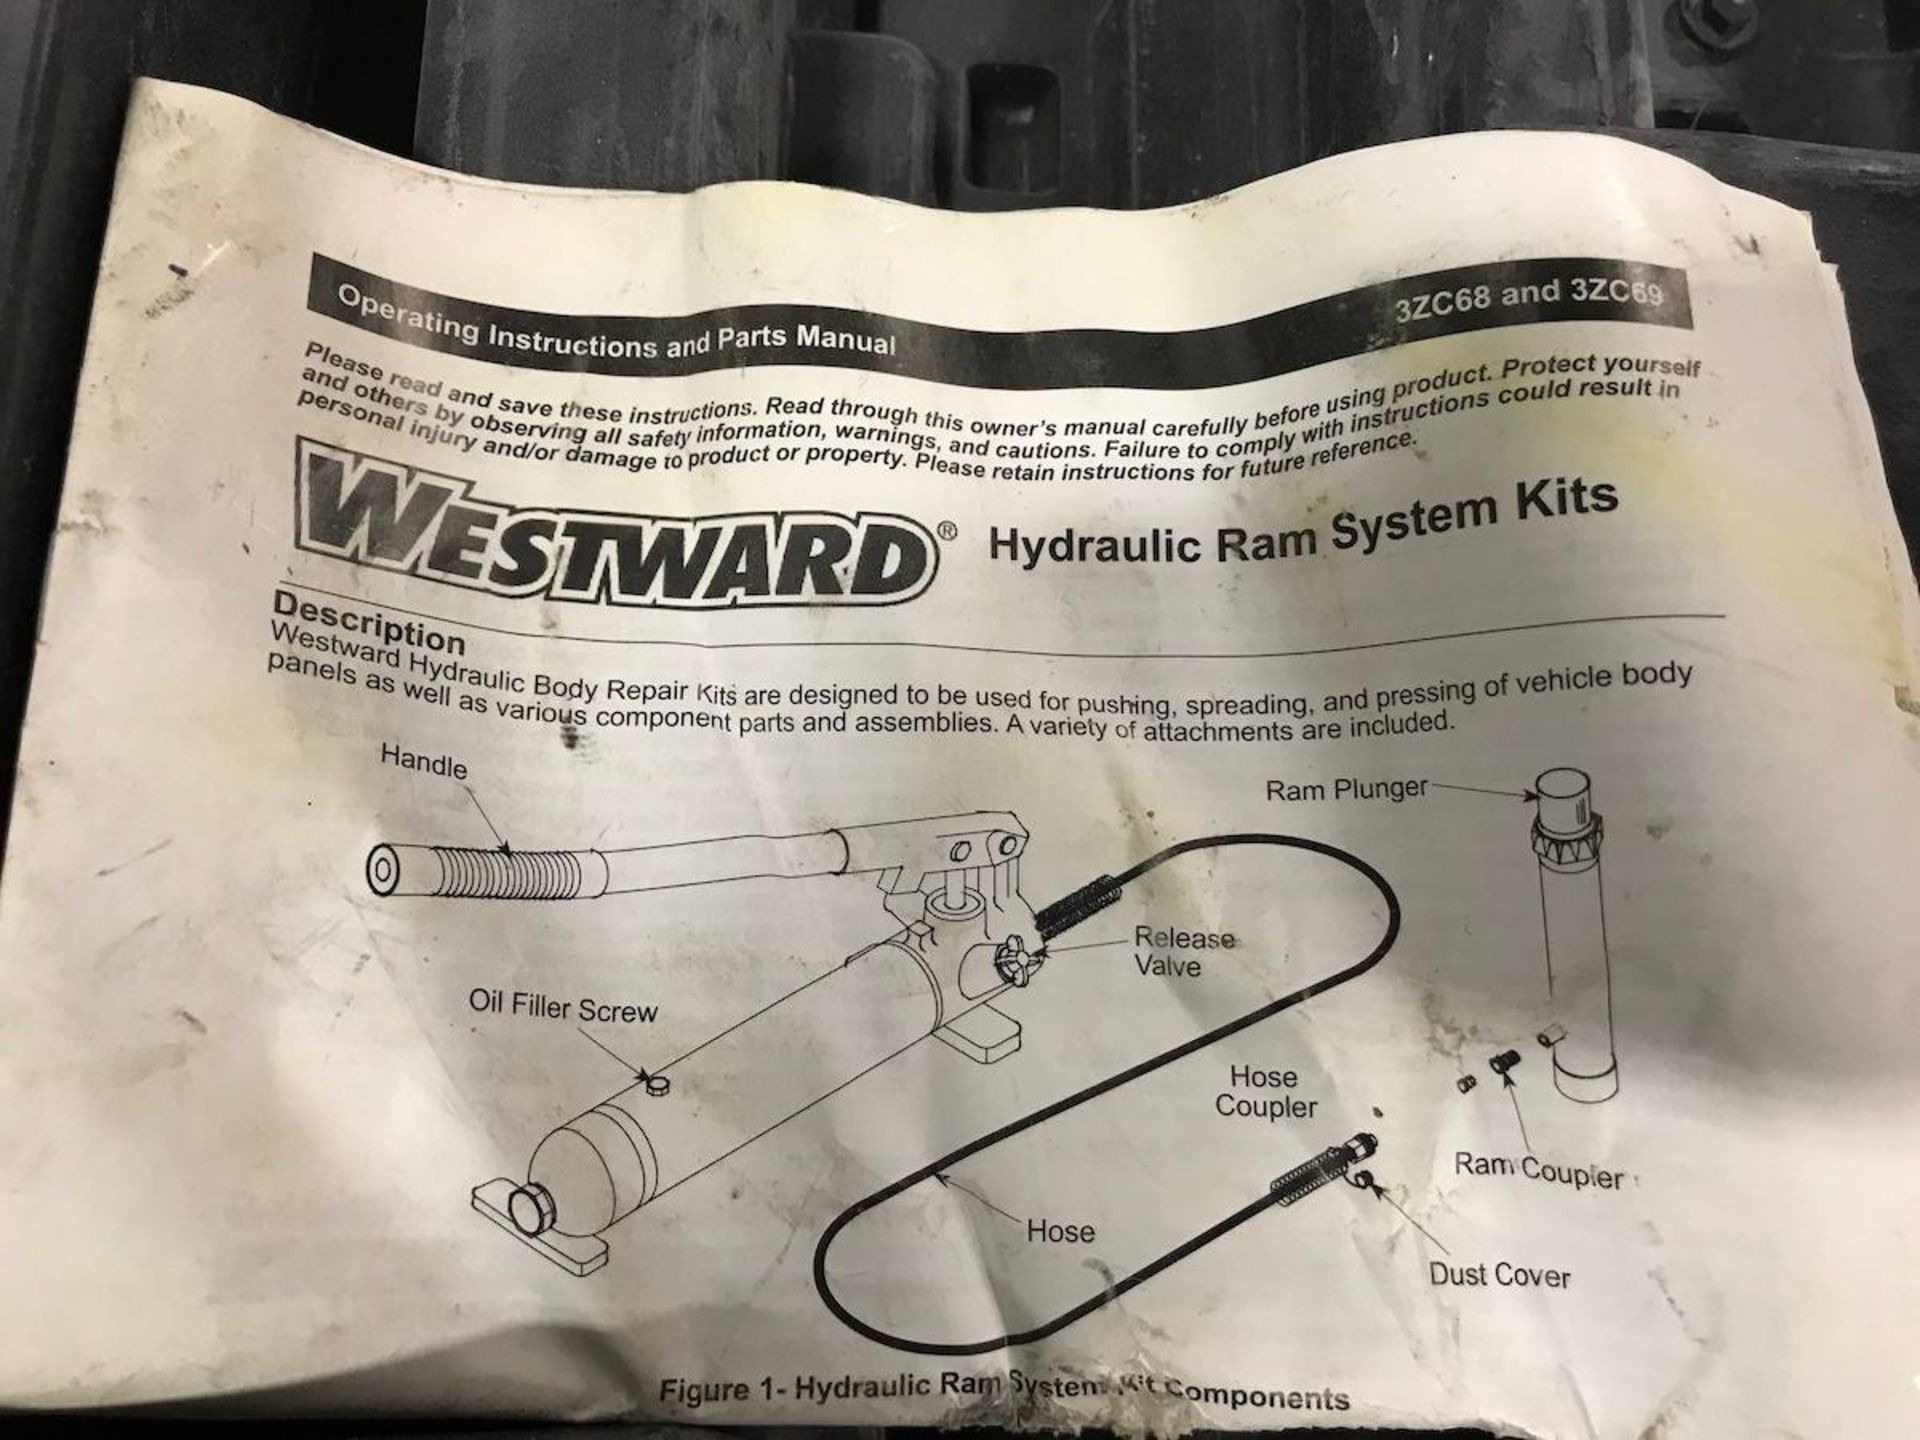 Westward Hydraulic Ram System Kits - Image 3 of 6